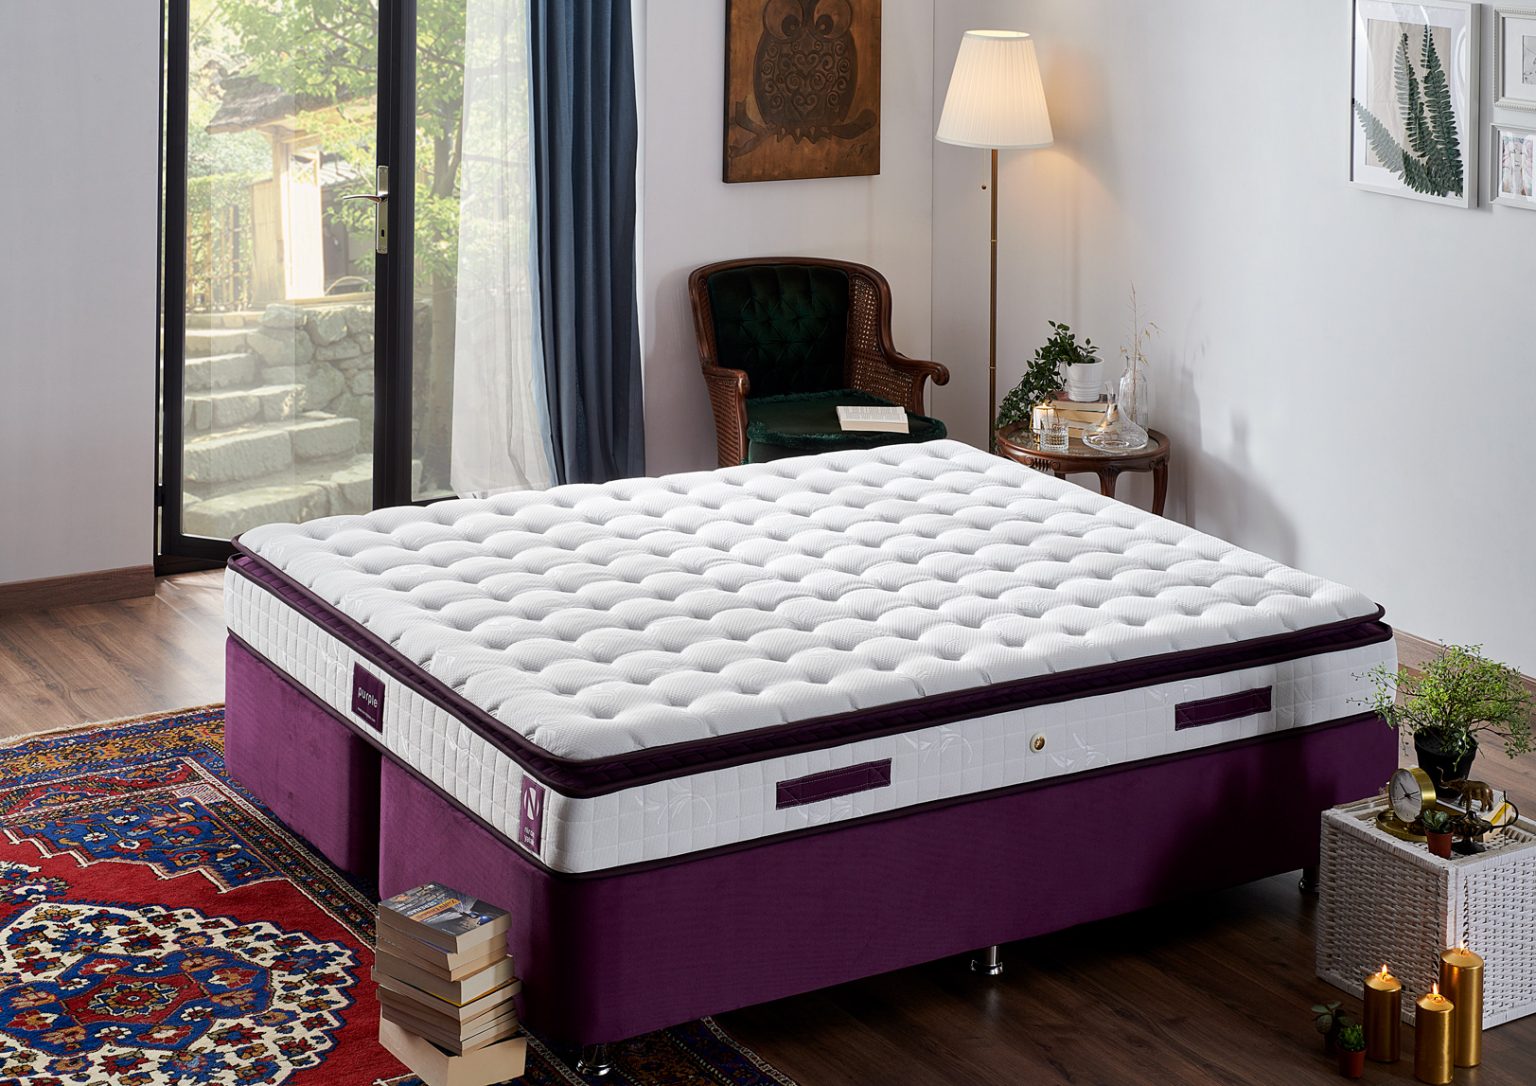 140×190 cm Purple Yatak Türkiye�nin ilk ve lider yatak satış sitesi